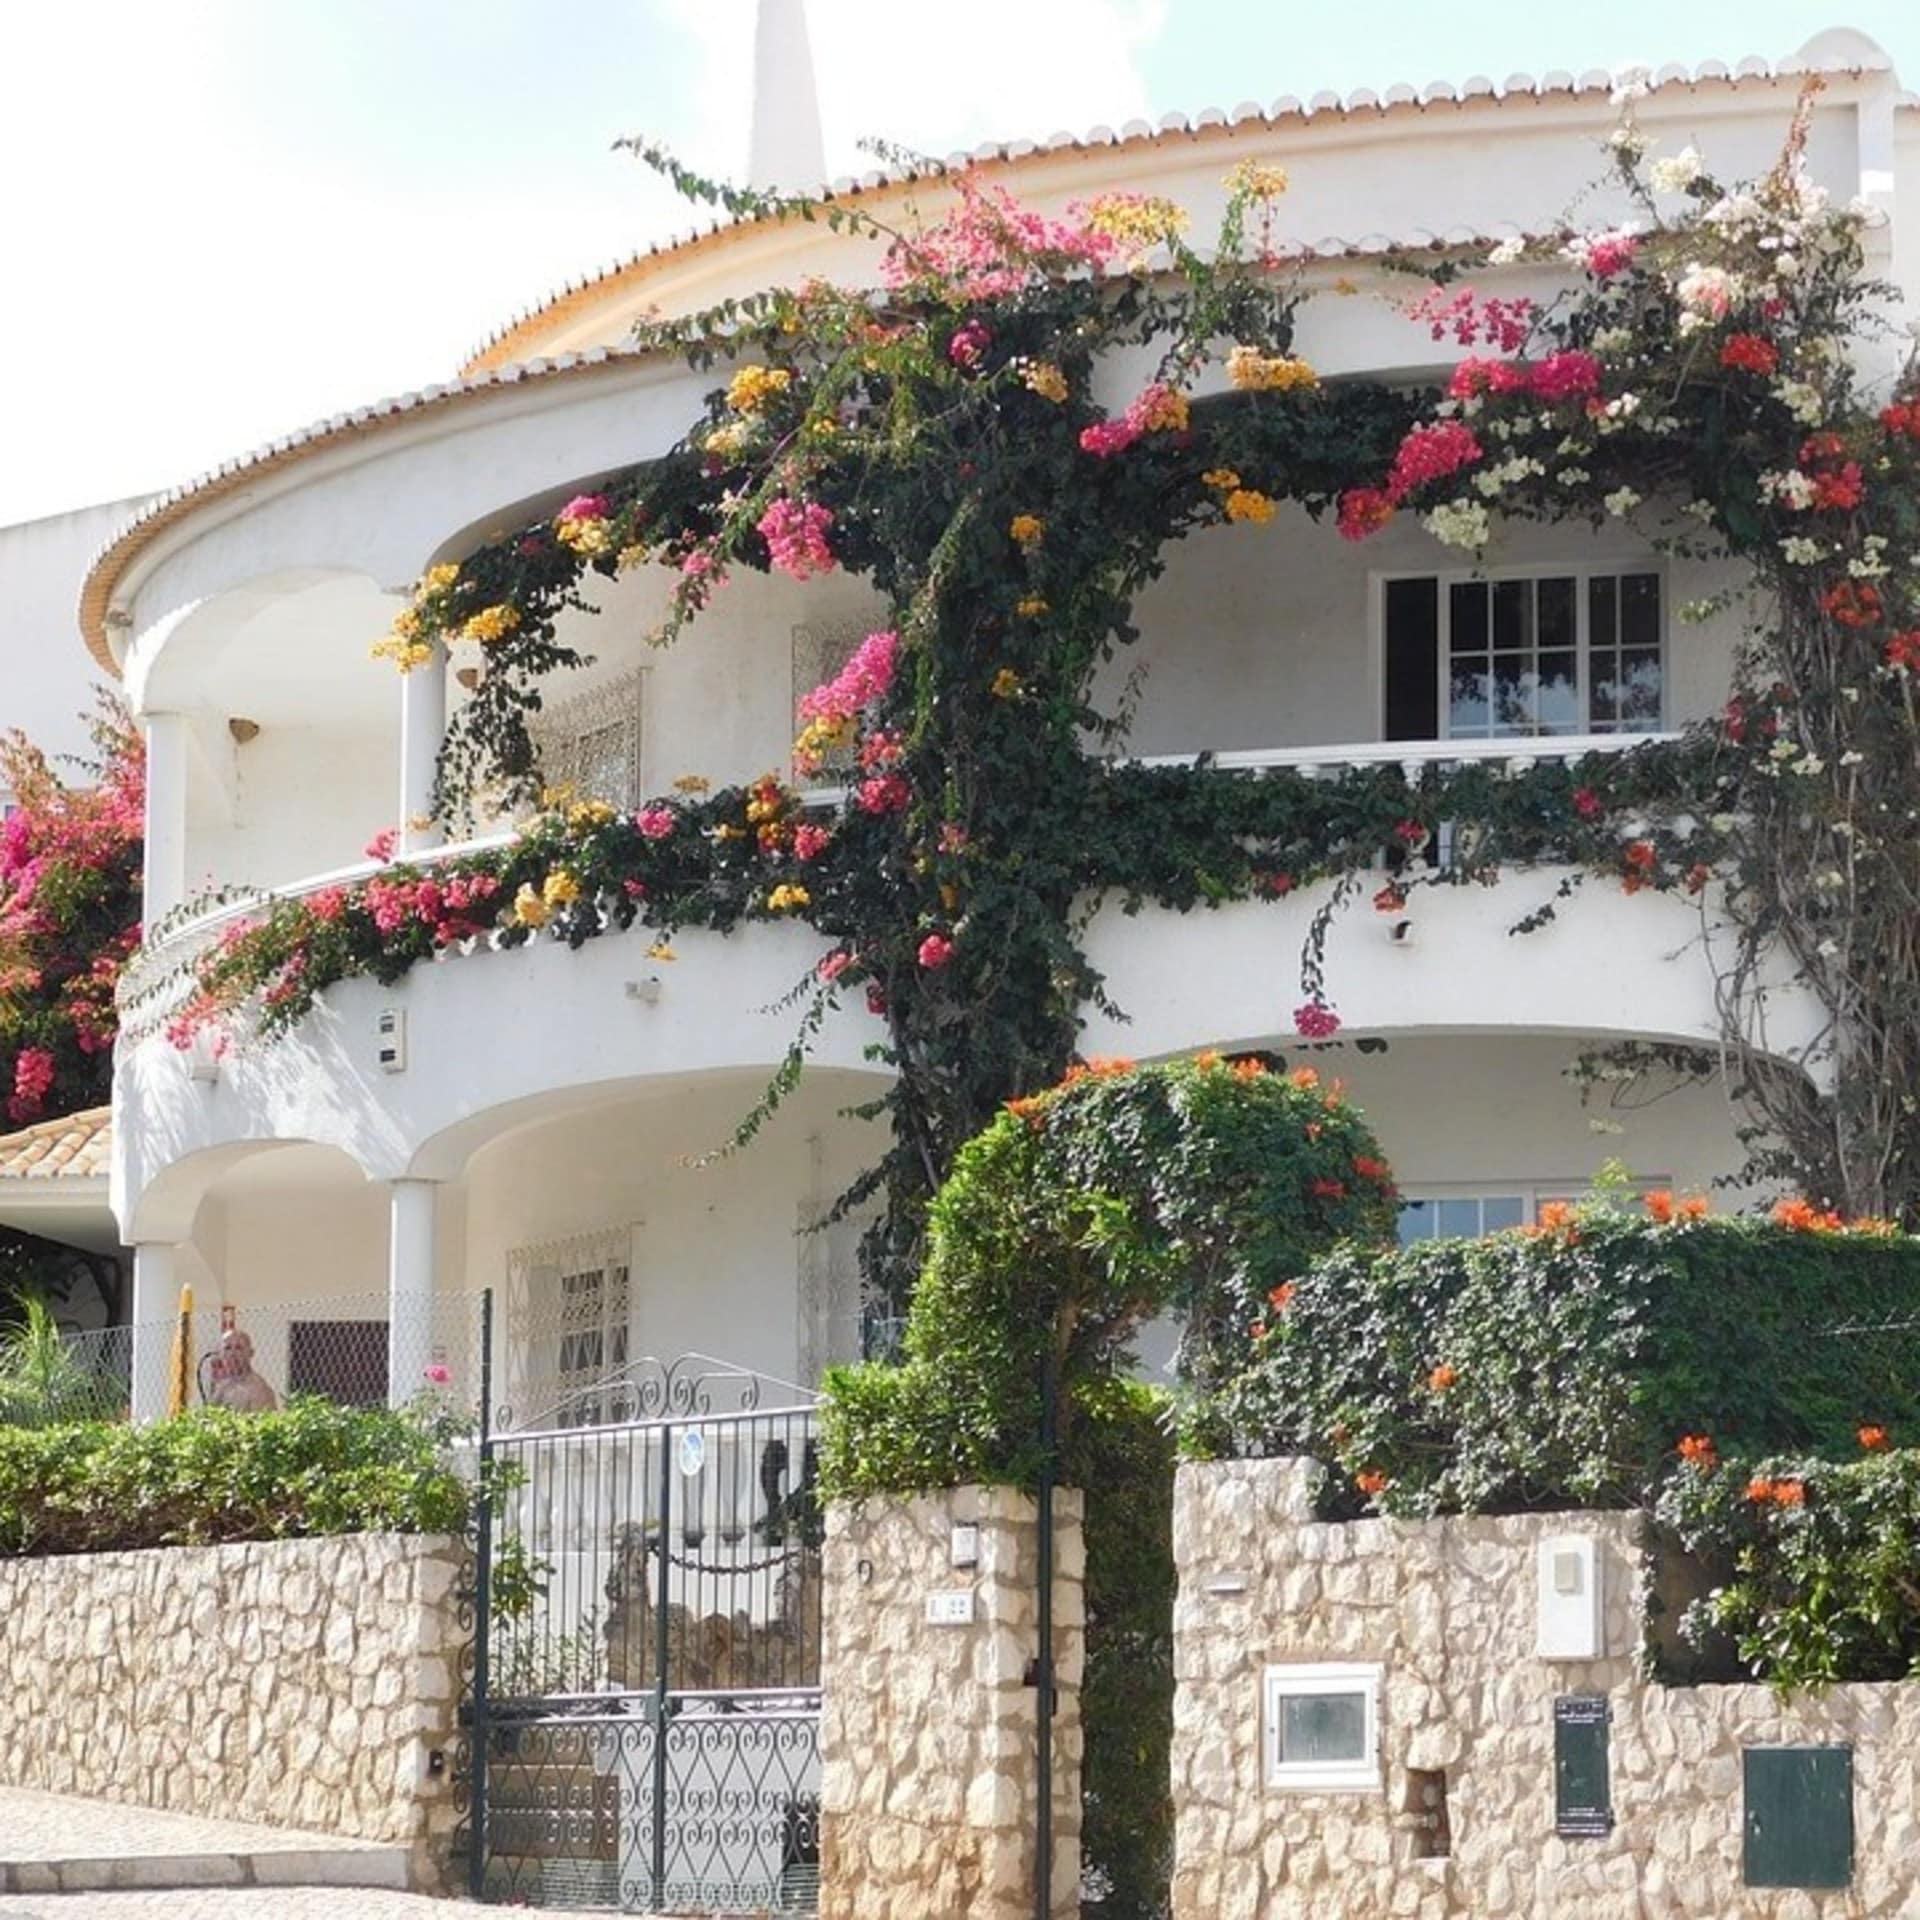 Blumenbewachsene Finca in Portugal mit Steinmauer